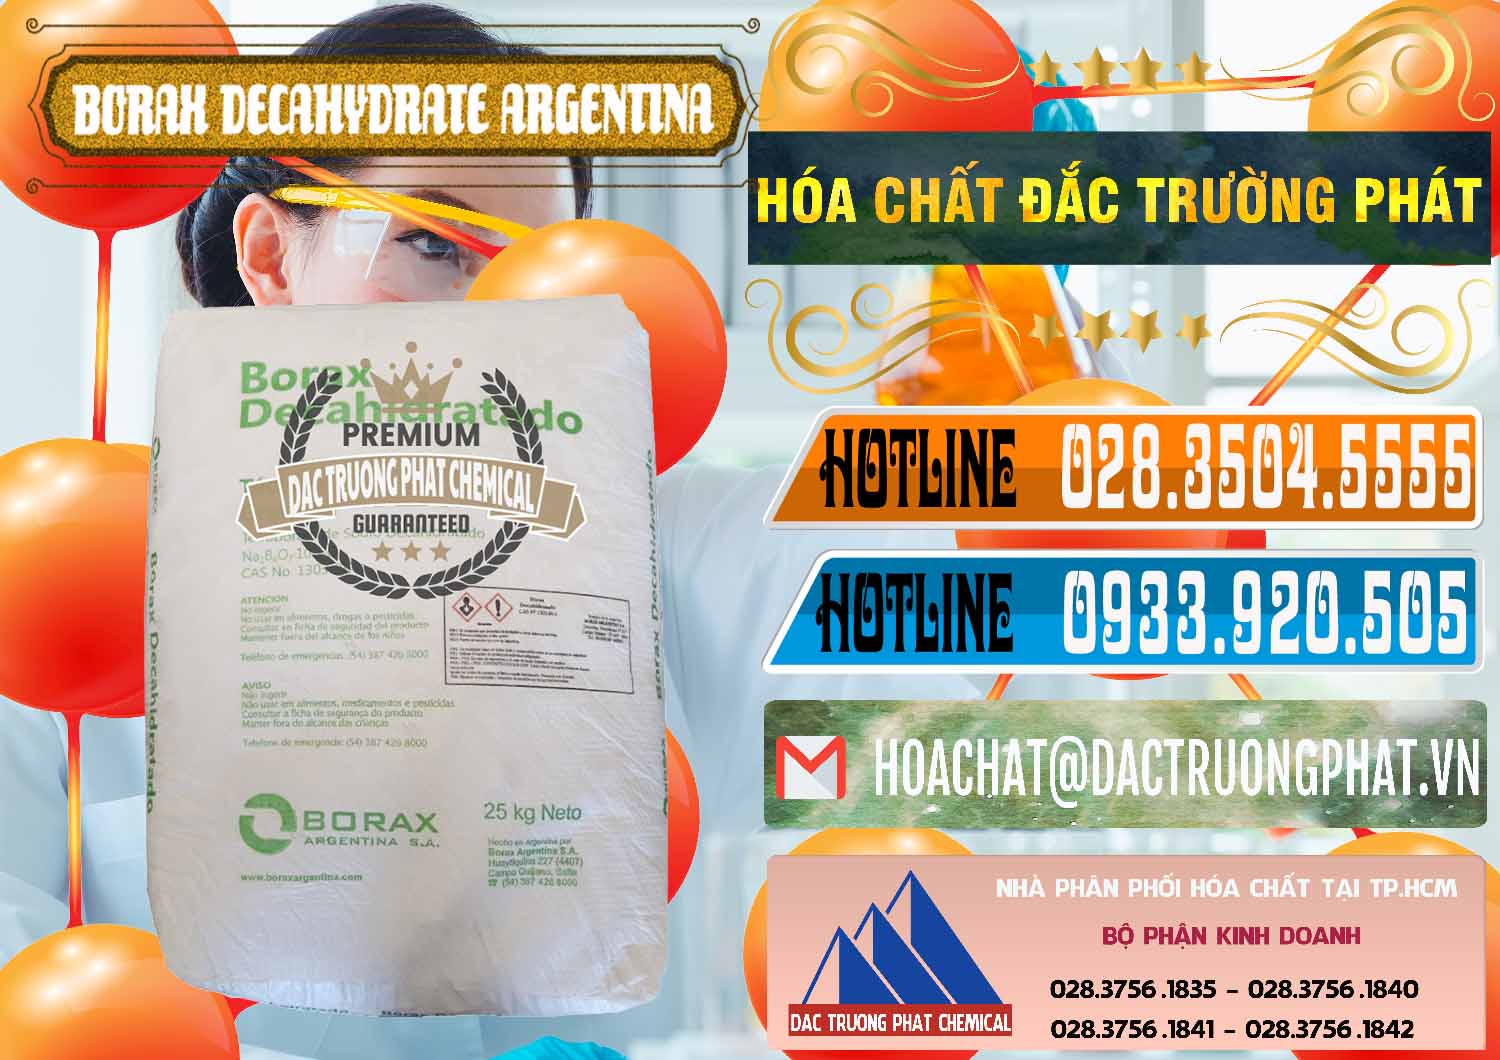 Cty chuyên nhập khẩu & bán Borax Decahydrate Argentina - 0446 - Công ty cung cấp và nhập khẩu hóa chất tại TP.HCM - stmp.net